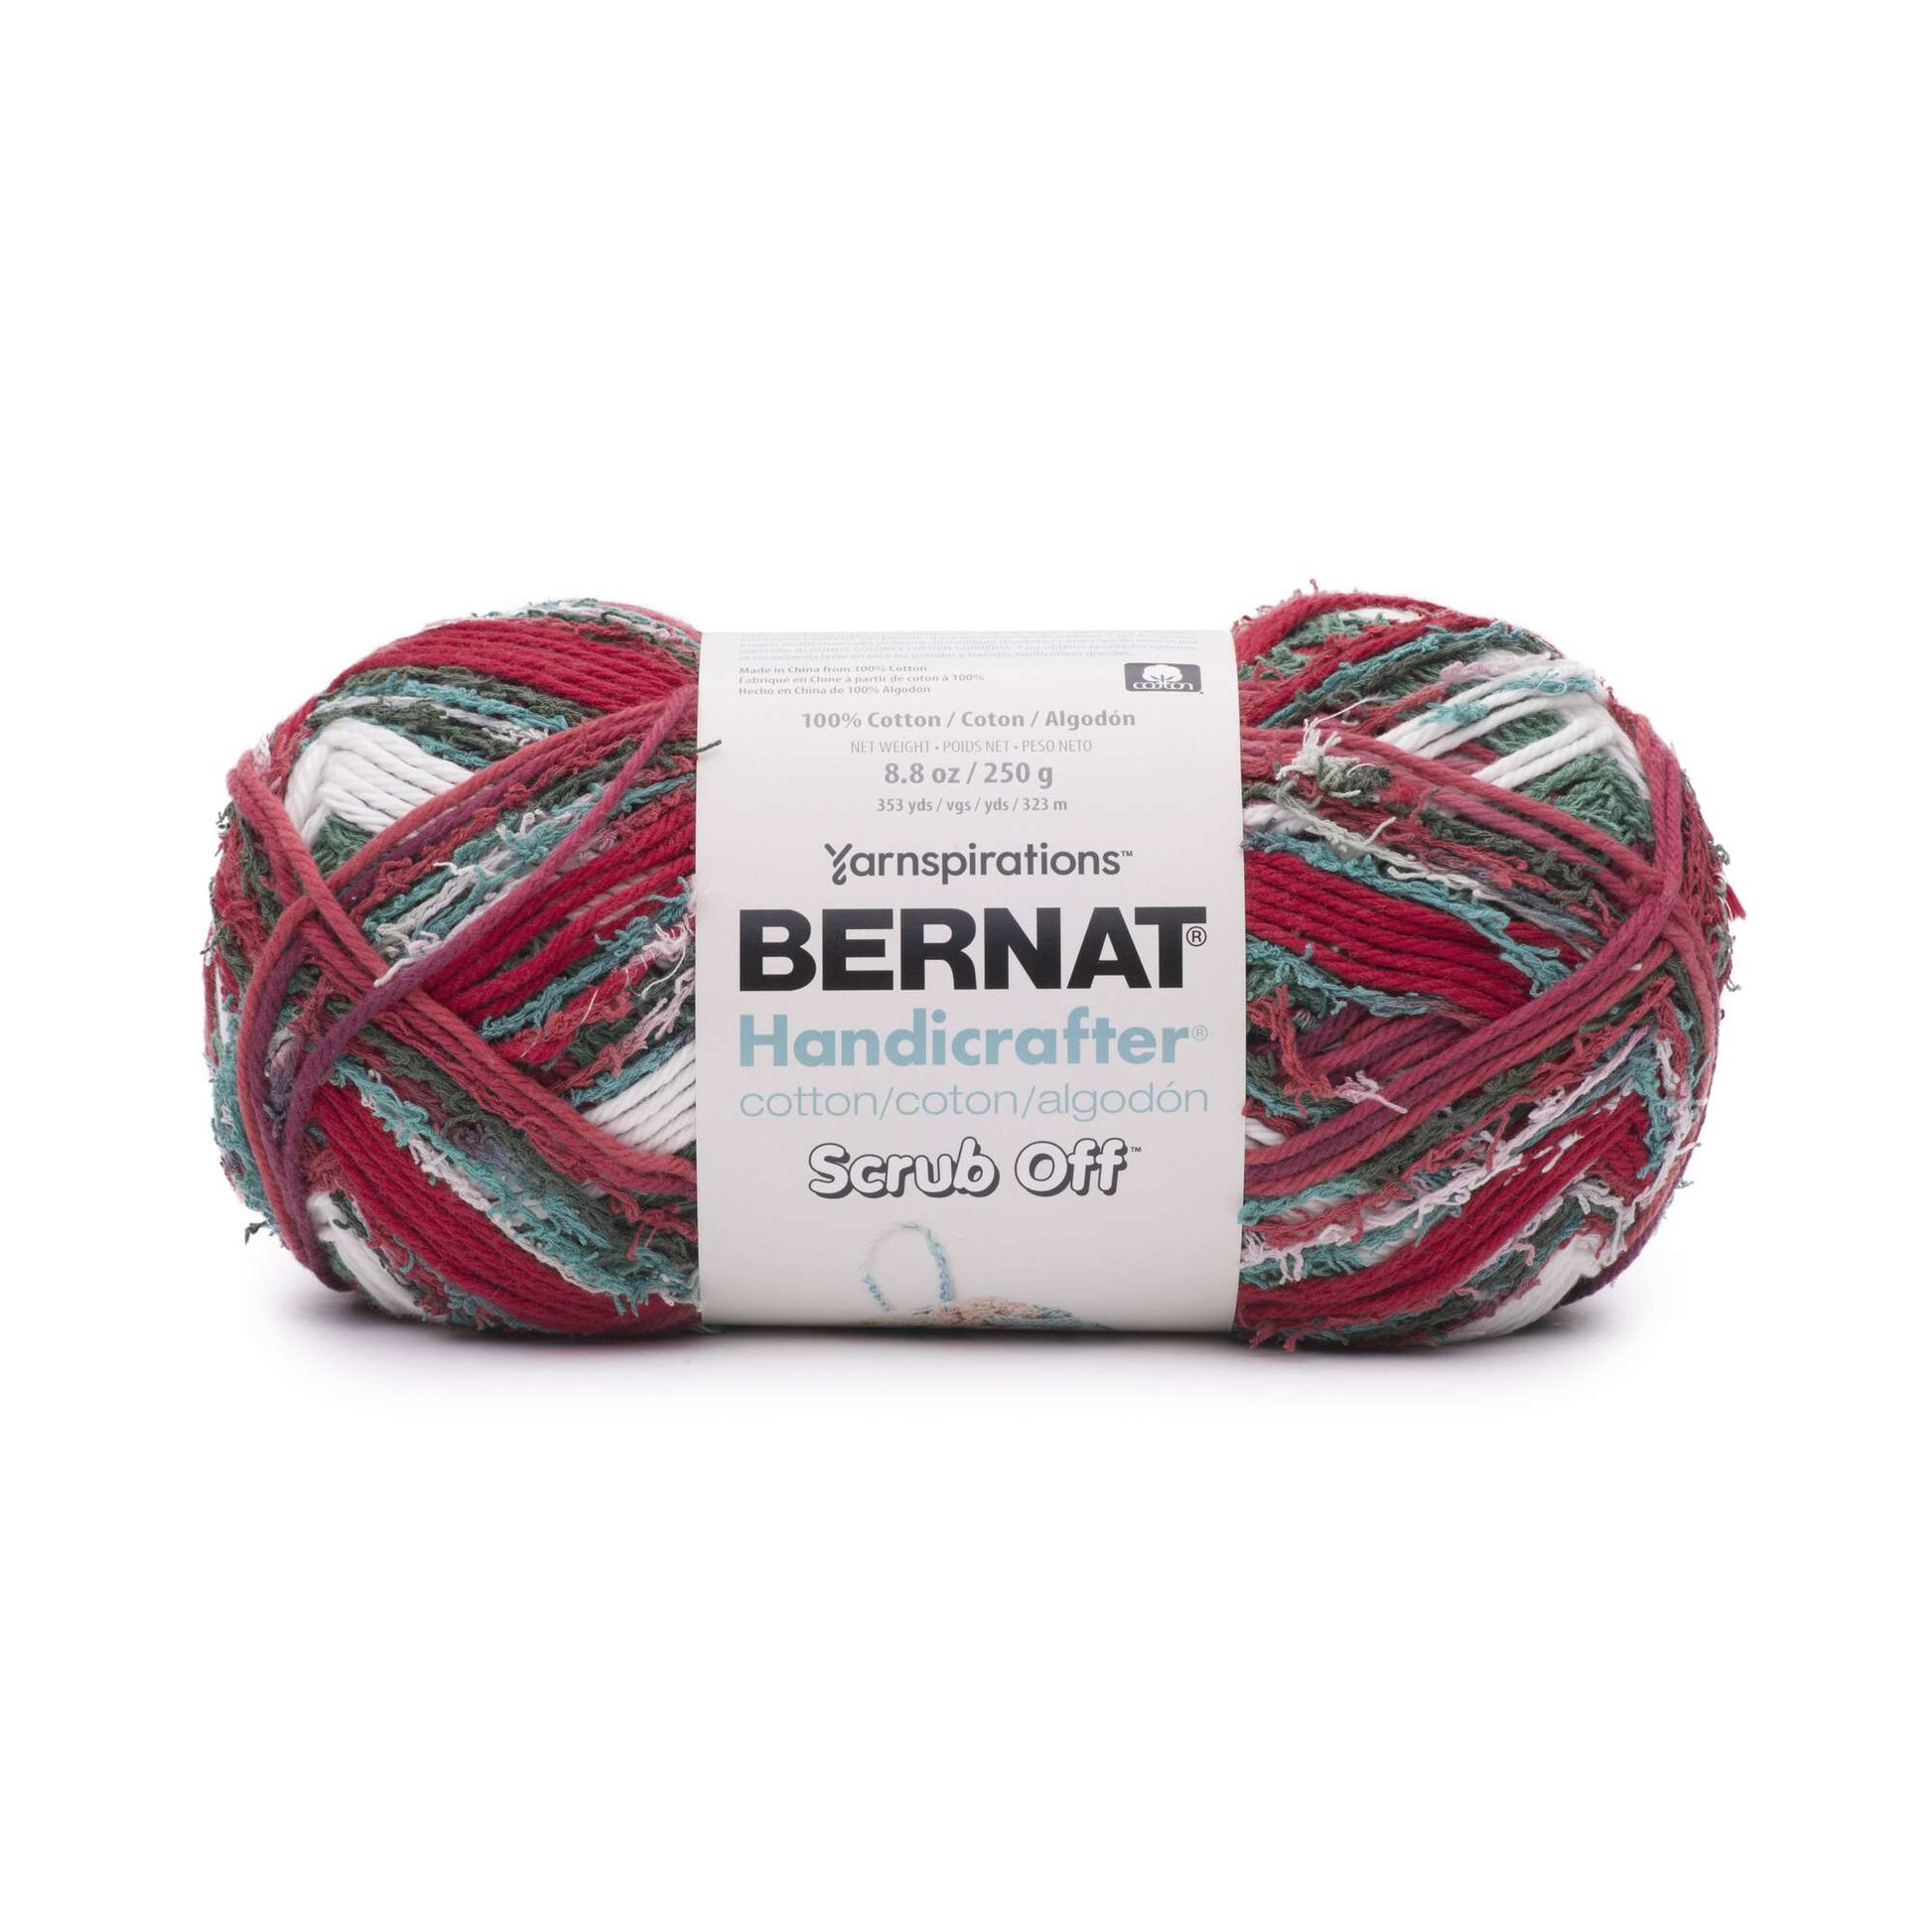 Bernat Handicrafter Scrub Off Yarn - Discontinued Shades